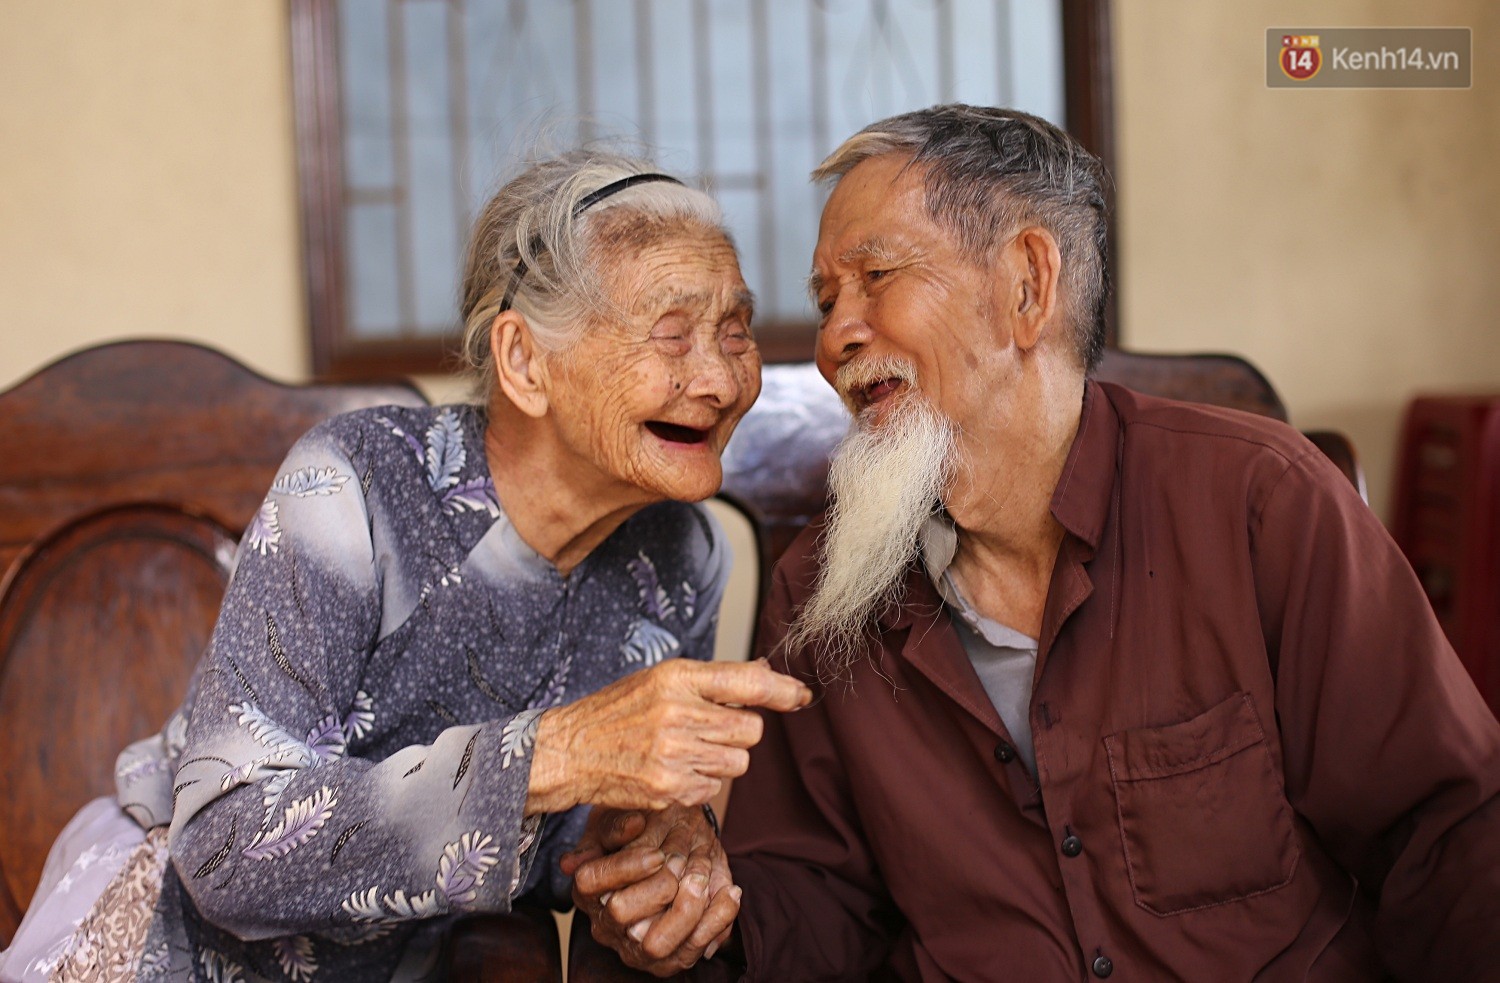 Một cặp vợ chồng 94 tuổi, người là nhiếp ảnh gia nổi tiếng đến từ Pháp. Bức ảnh đầy ý nghĩa này sẽ khiến bạn thấy cảm động trước tình yêu và sự đoàn kết của hai người. Hãy mở rộng trái tim của mình để khám phá thế giới thông qua góc nhìn đầy tâm hồn của họ.